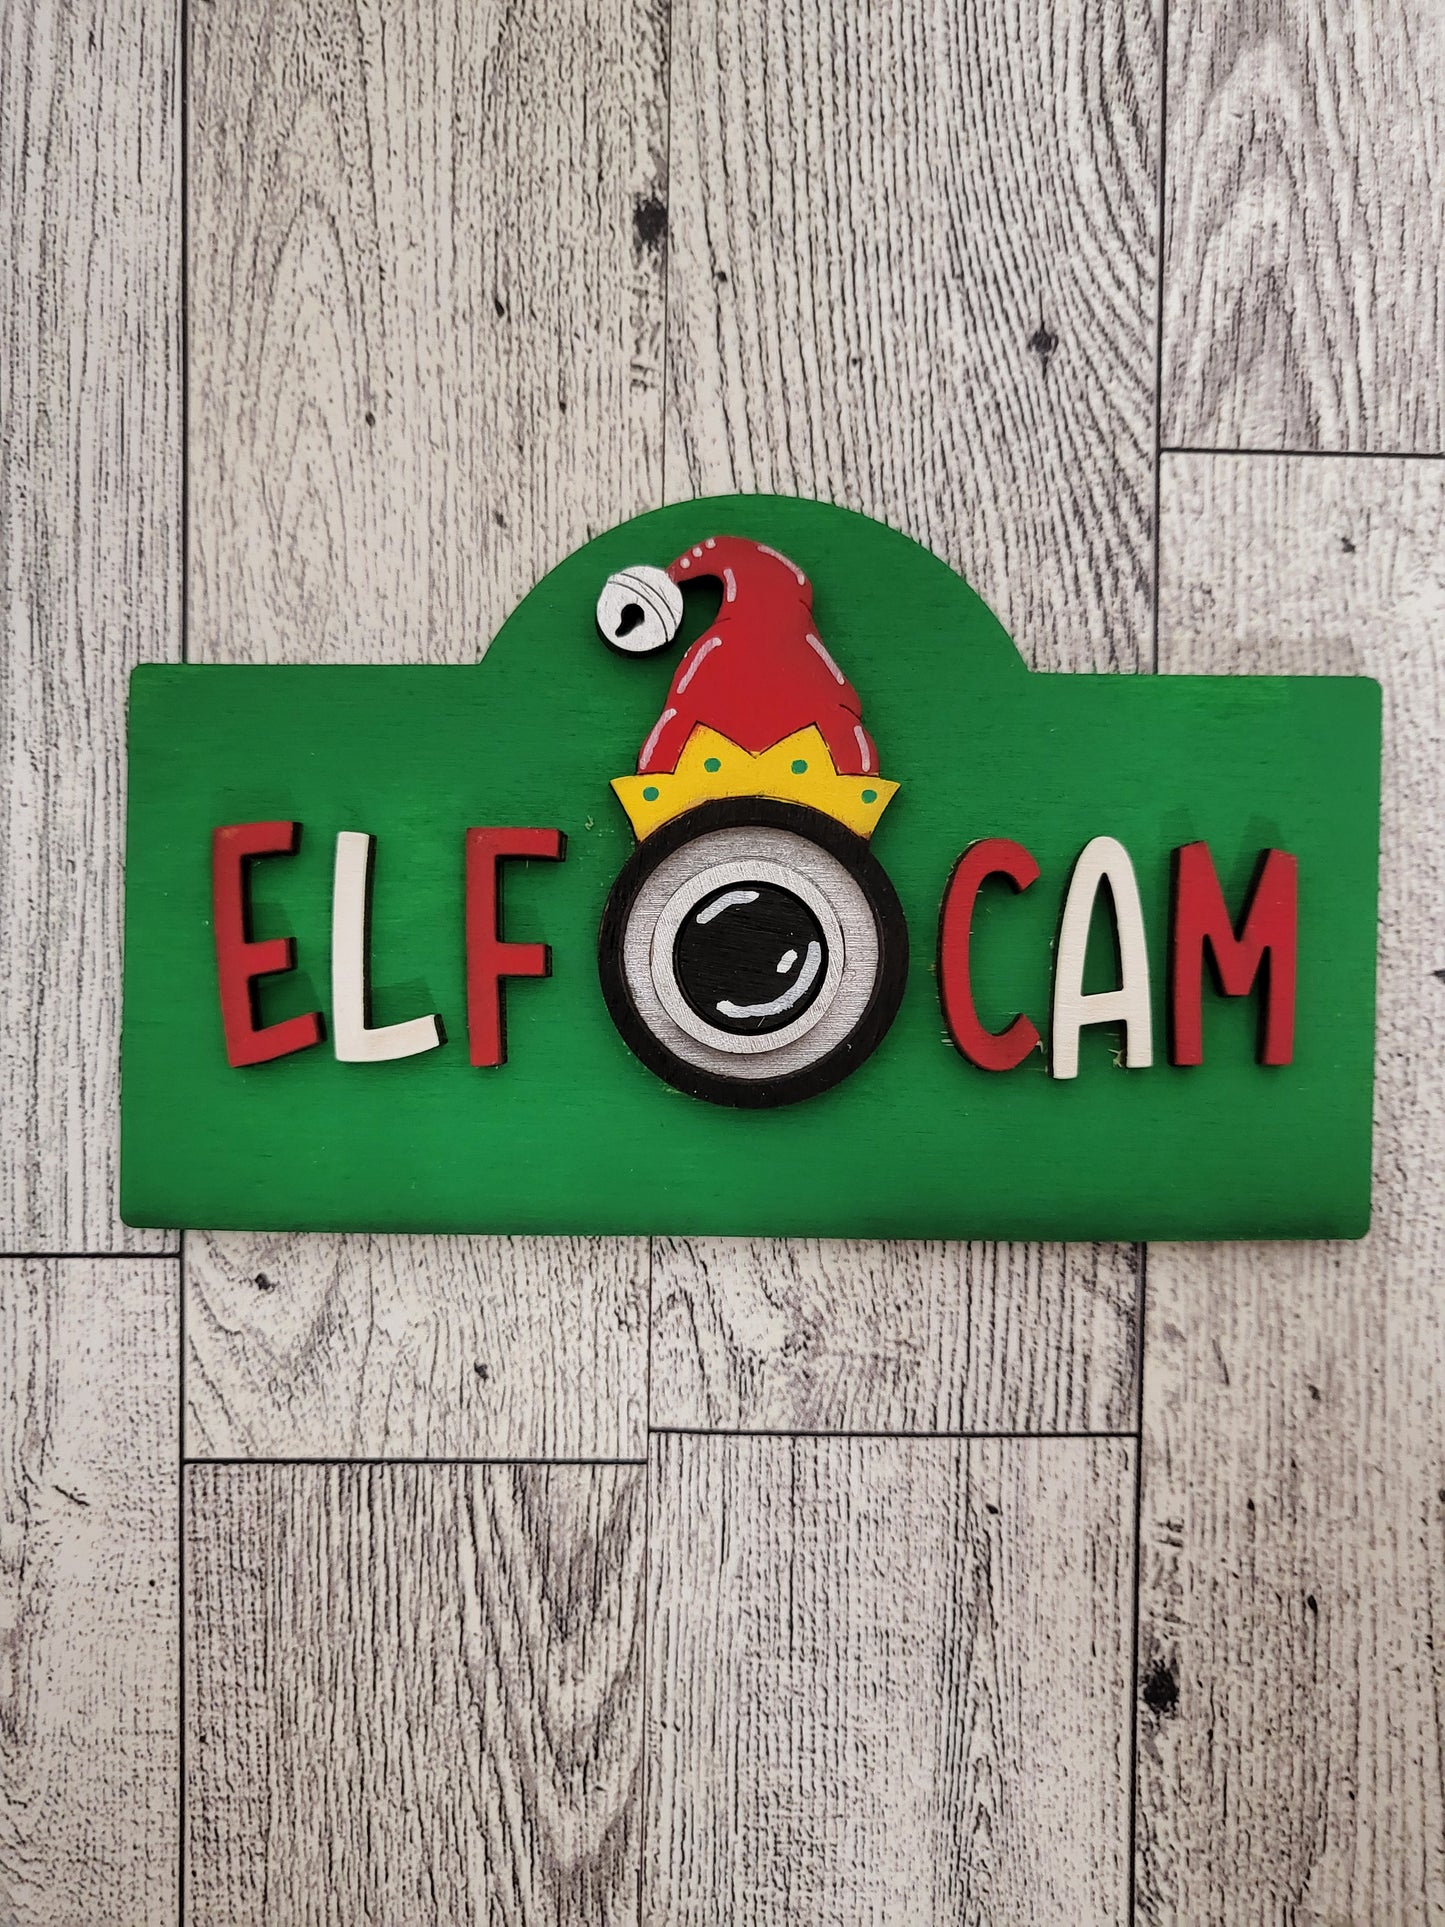 Elf Cam post frame insert